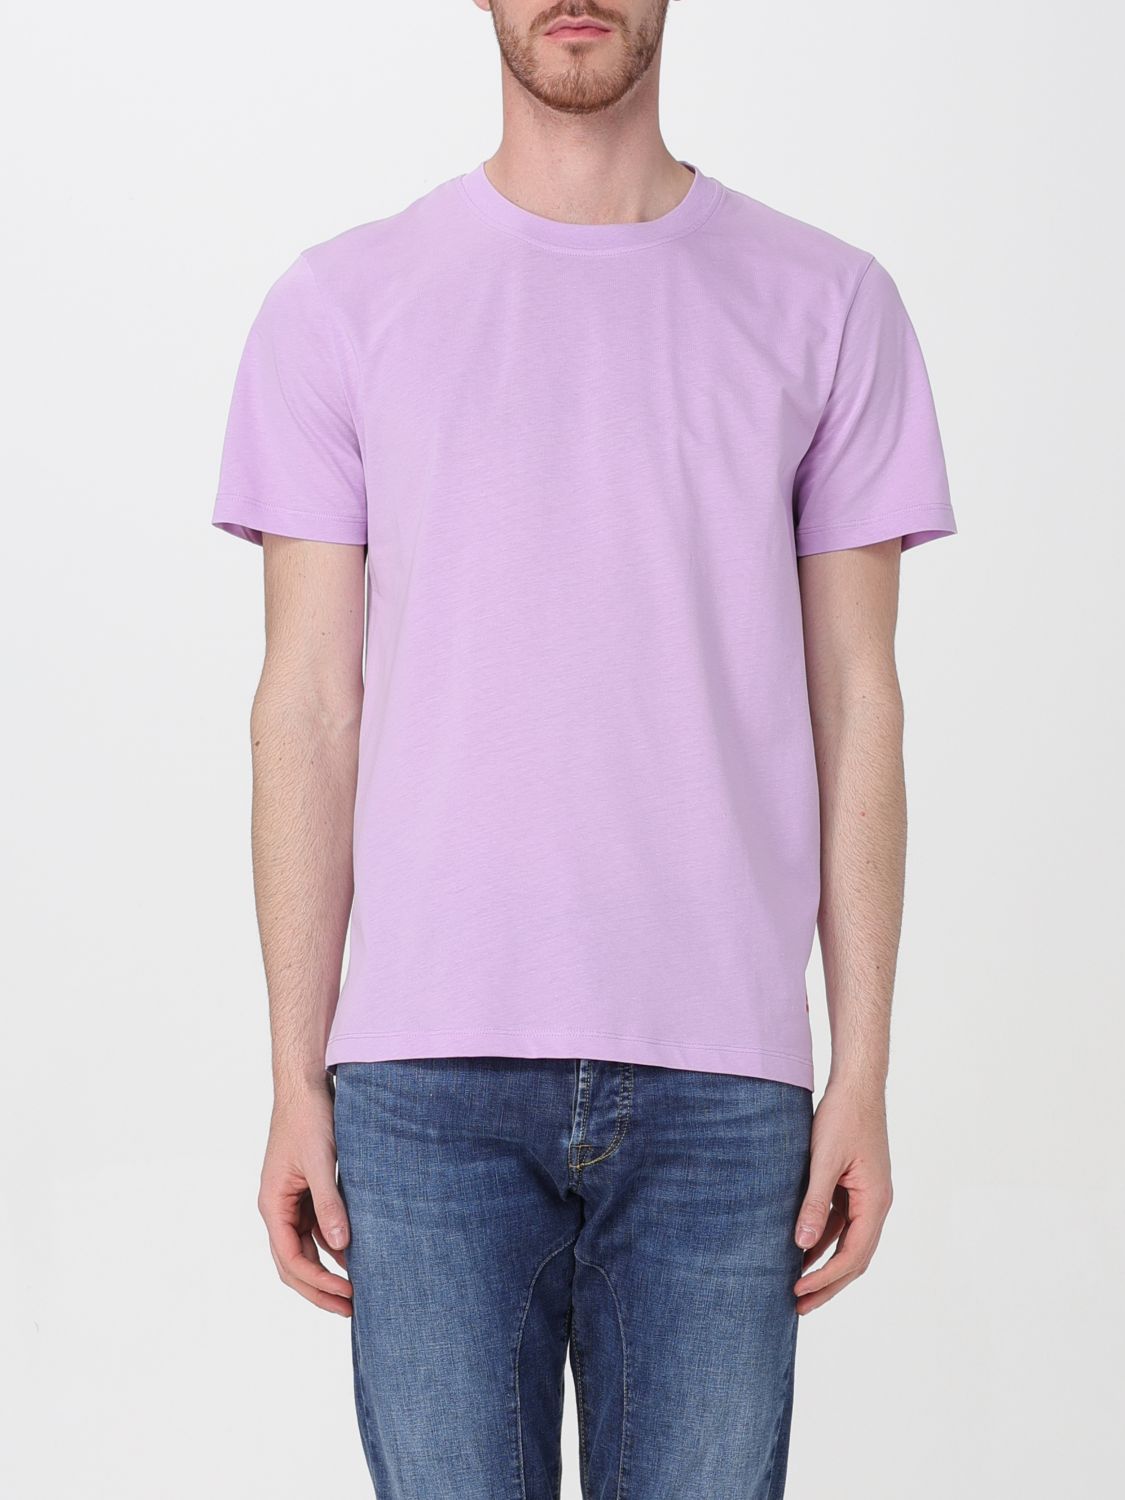 Peuterey T-Shirt PEUTEREY Men colour Lilac